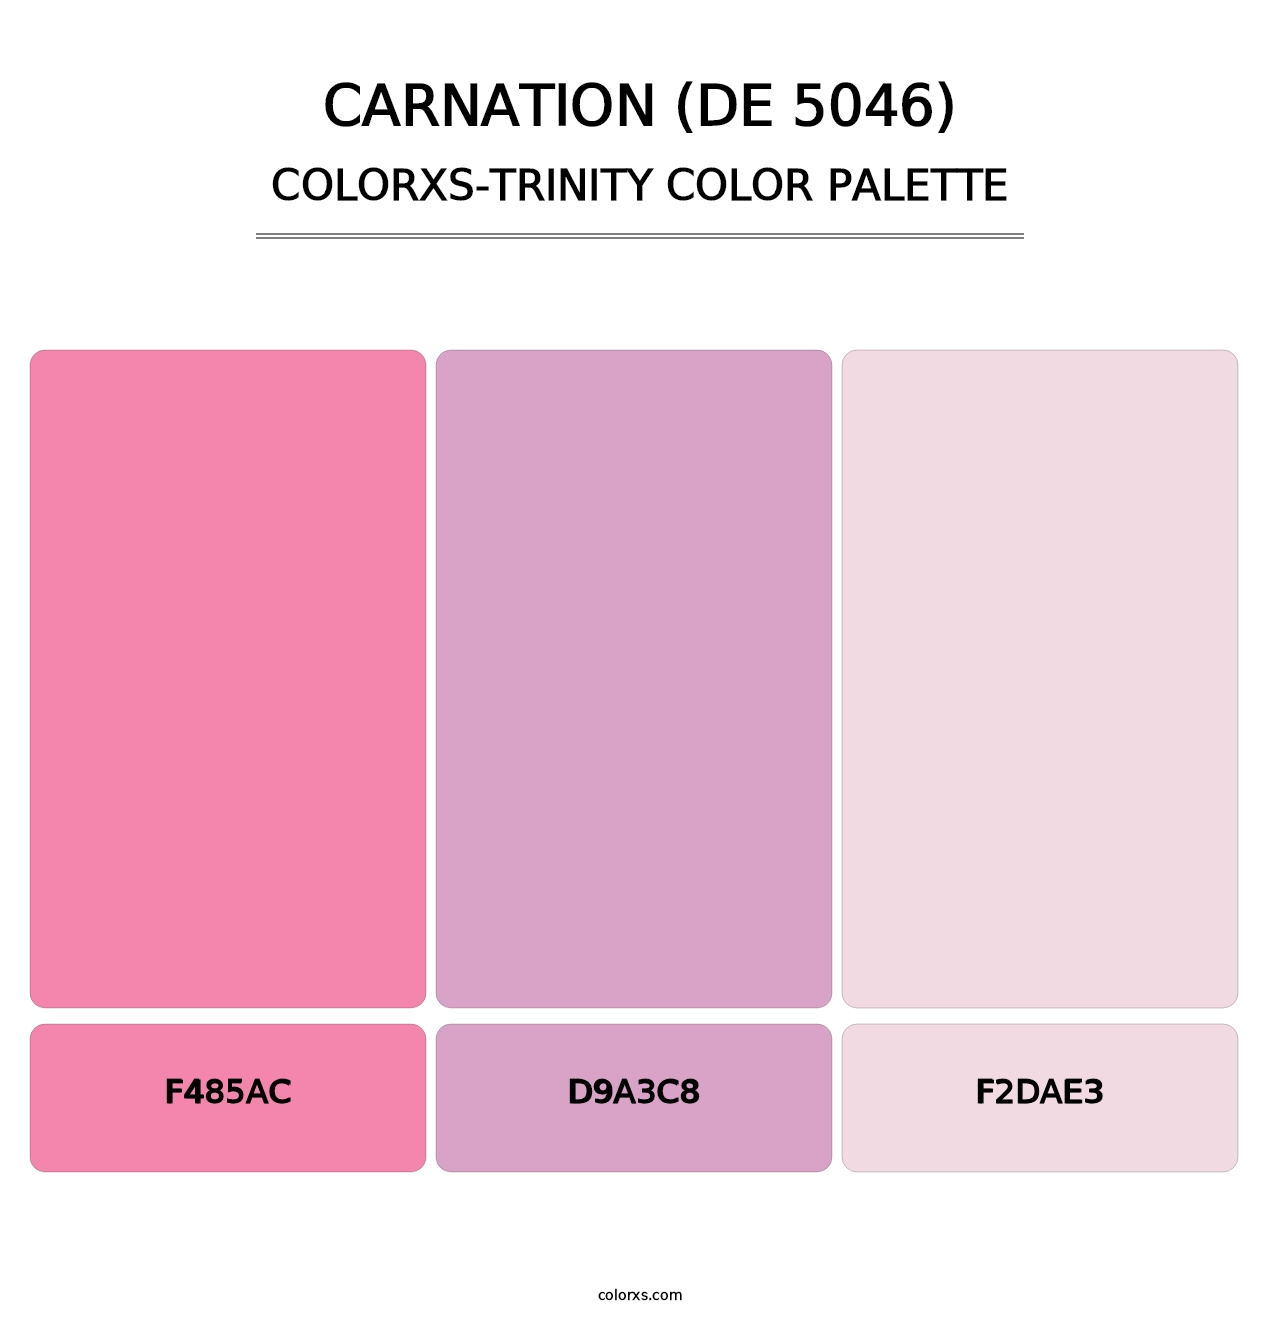 Carnation (DE 5046) - Colorxs Trinity Palette